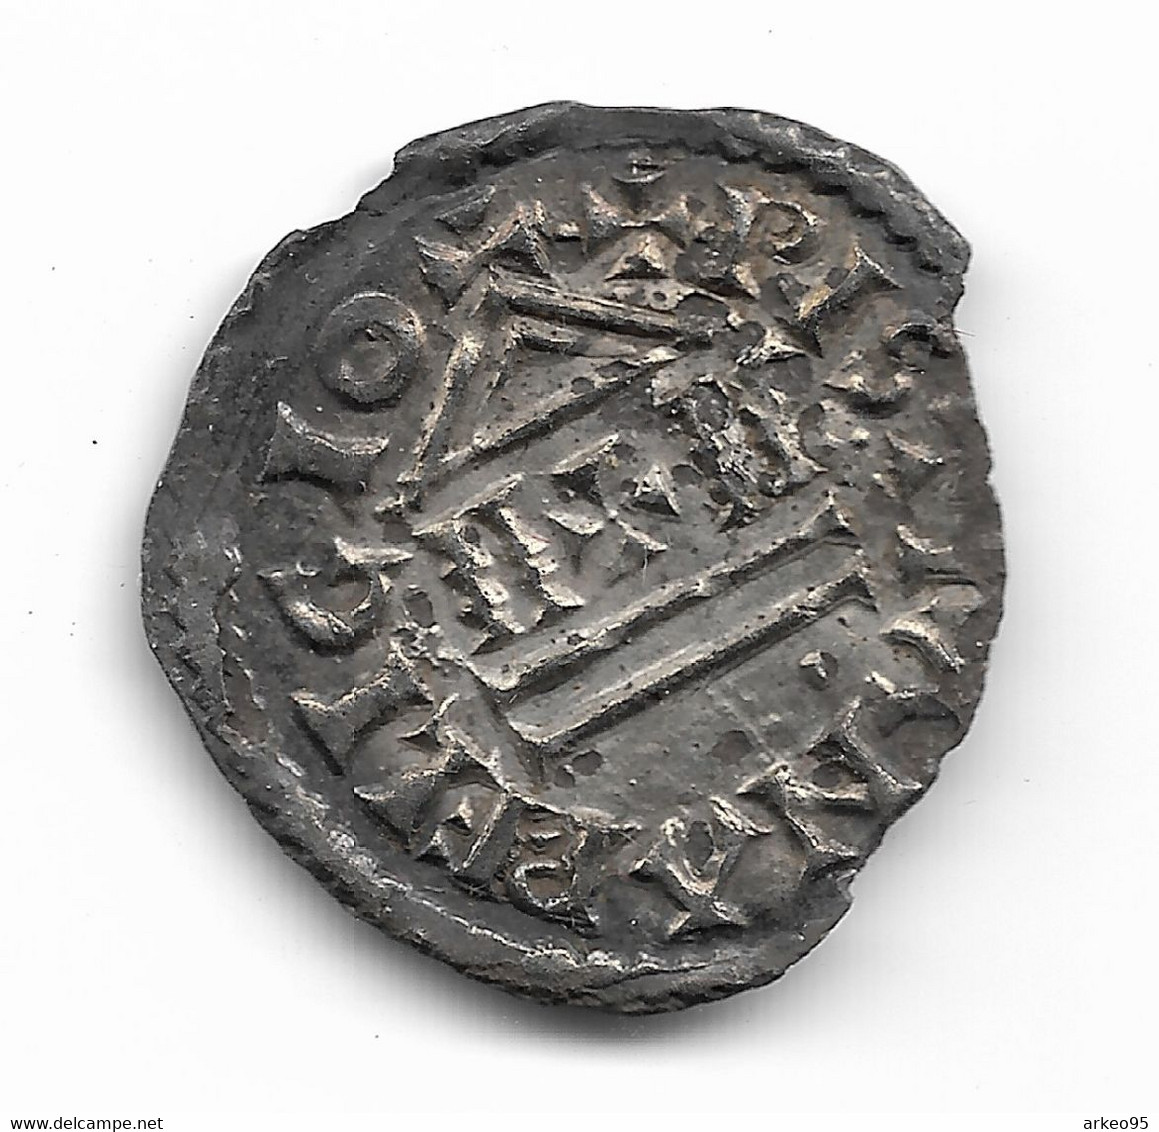 Denier D’argent De Louis Ier Le Pieux (814-842), Trésor De Luzancy (77) - 814-840 Lodewijk De Vrome